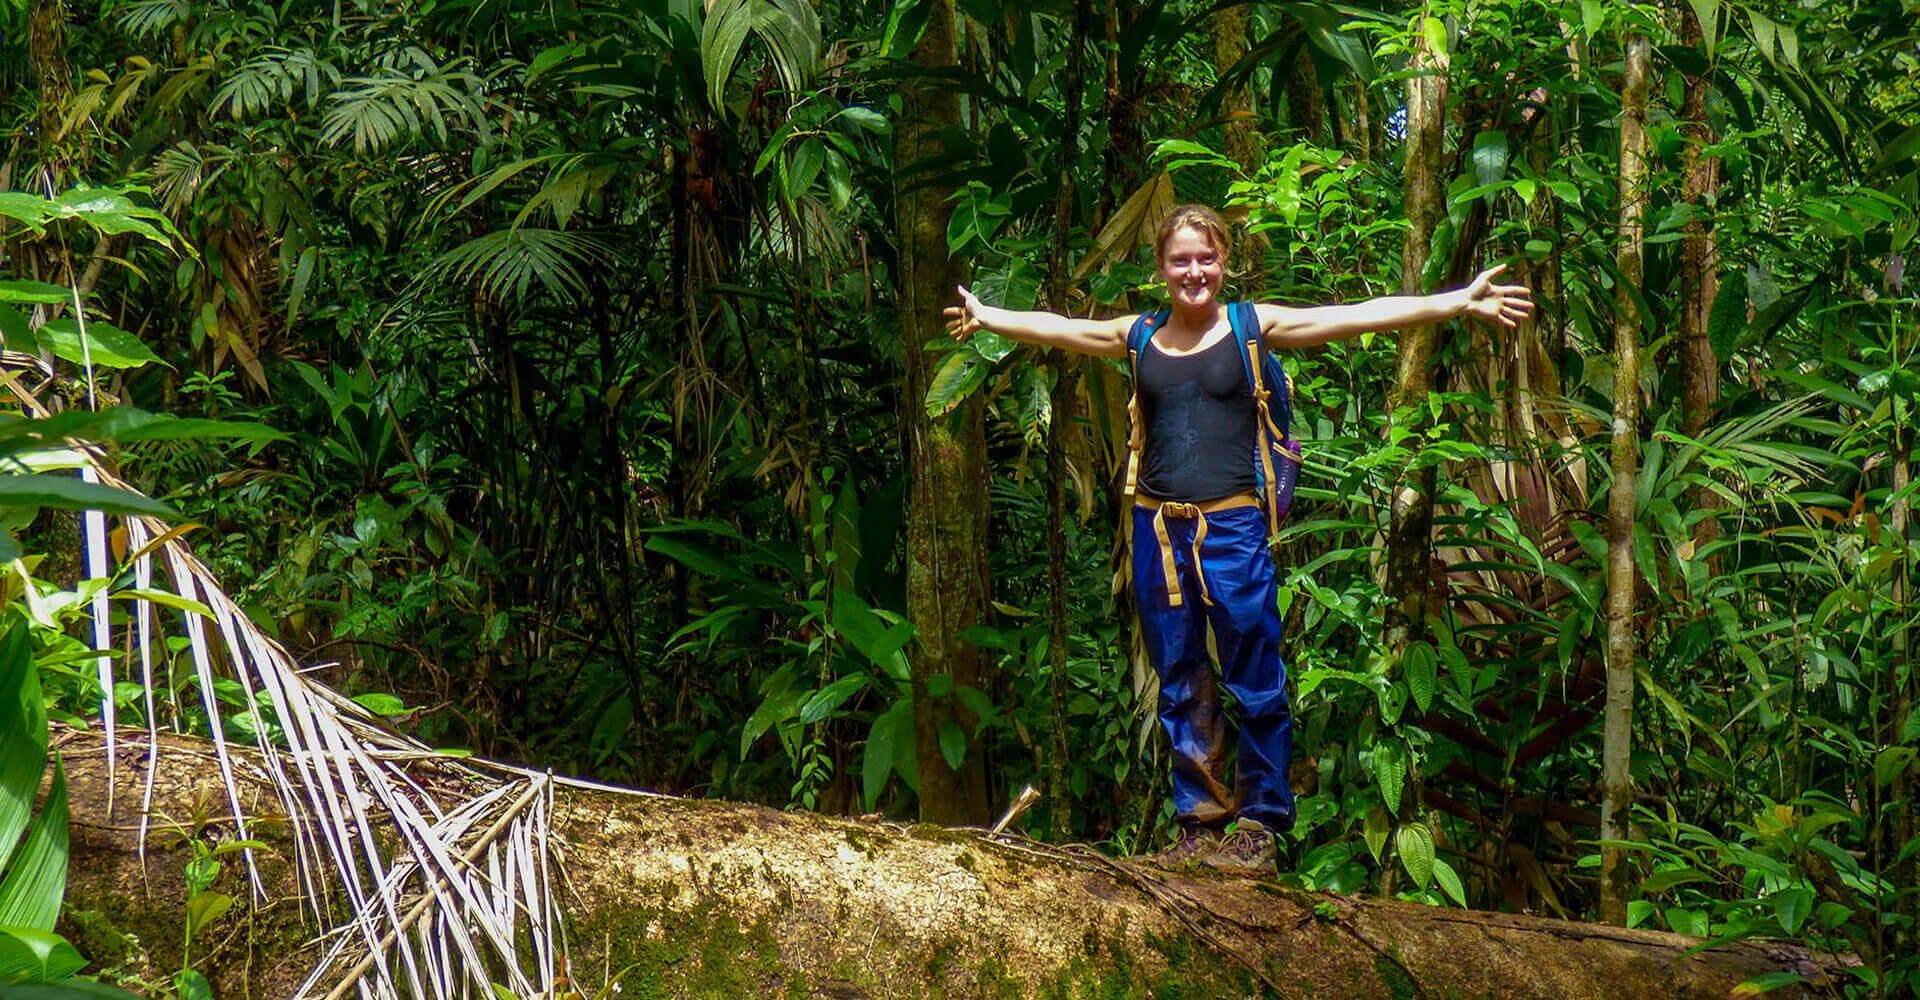 يشعر السائح بالحرية في الطبيعة الجميلة في غابة ماكاناداوا في سريلانكا